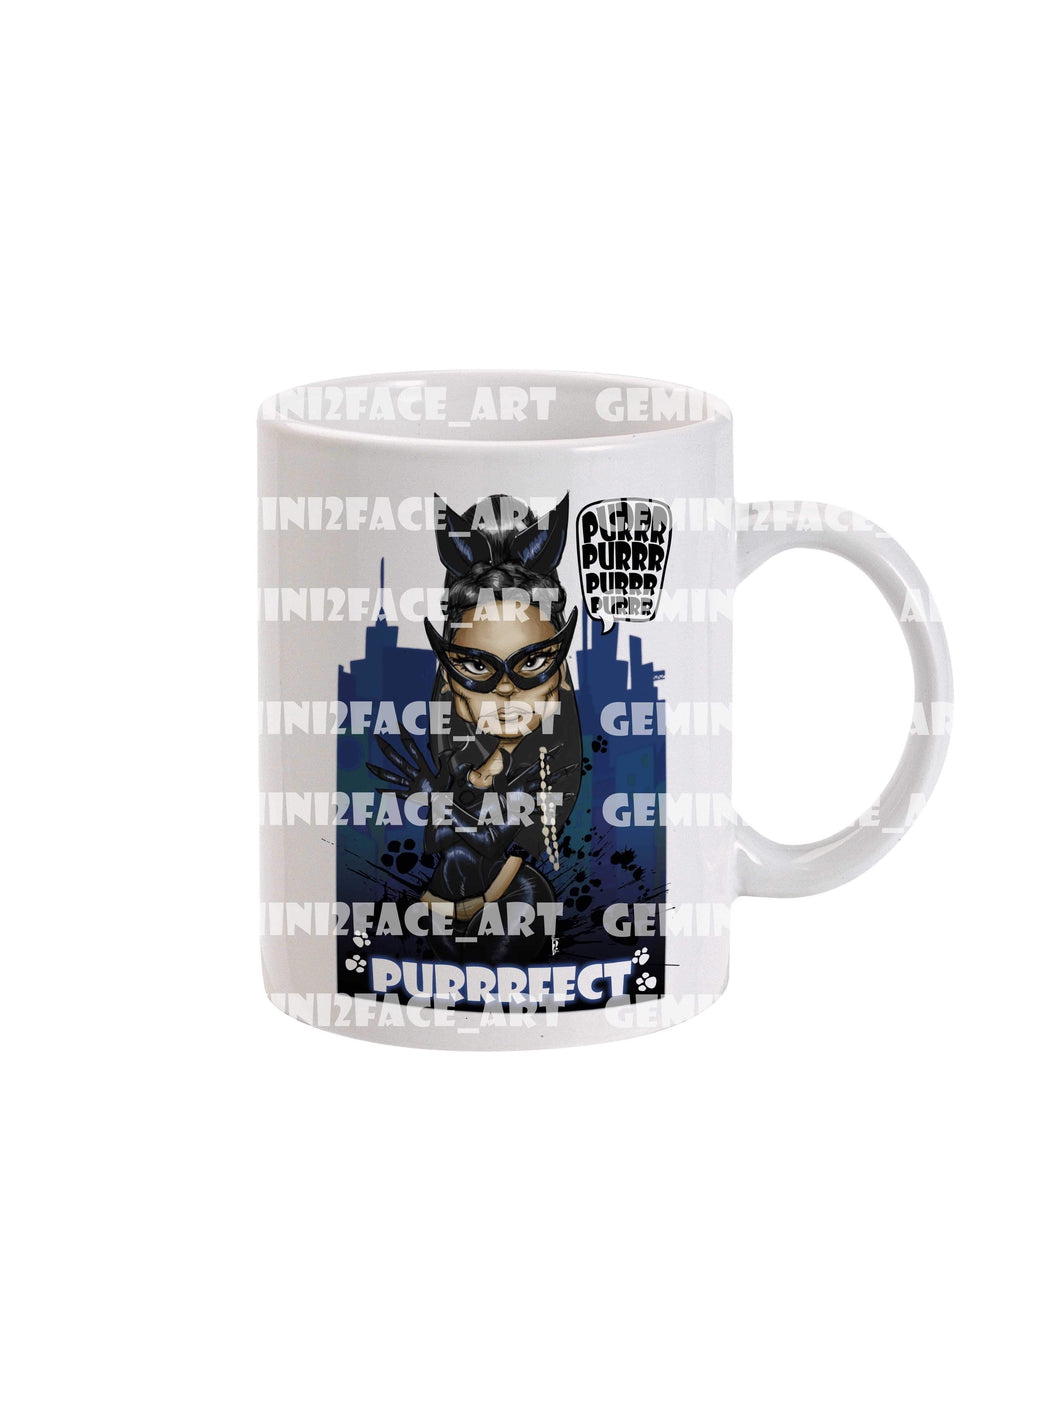 Purrrrrrrrrrfect.. Mug Gemini2face Art E-Store 